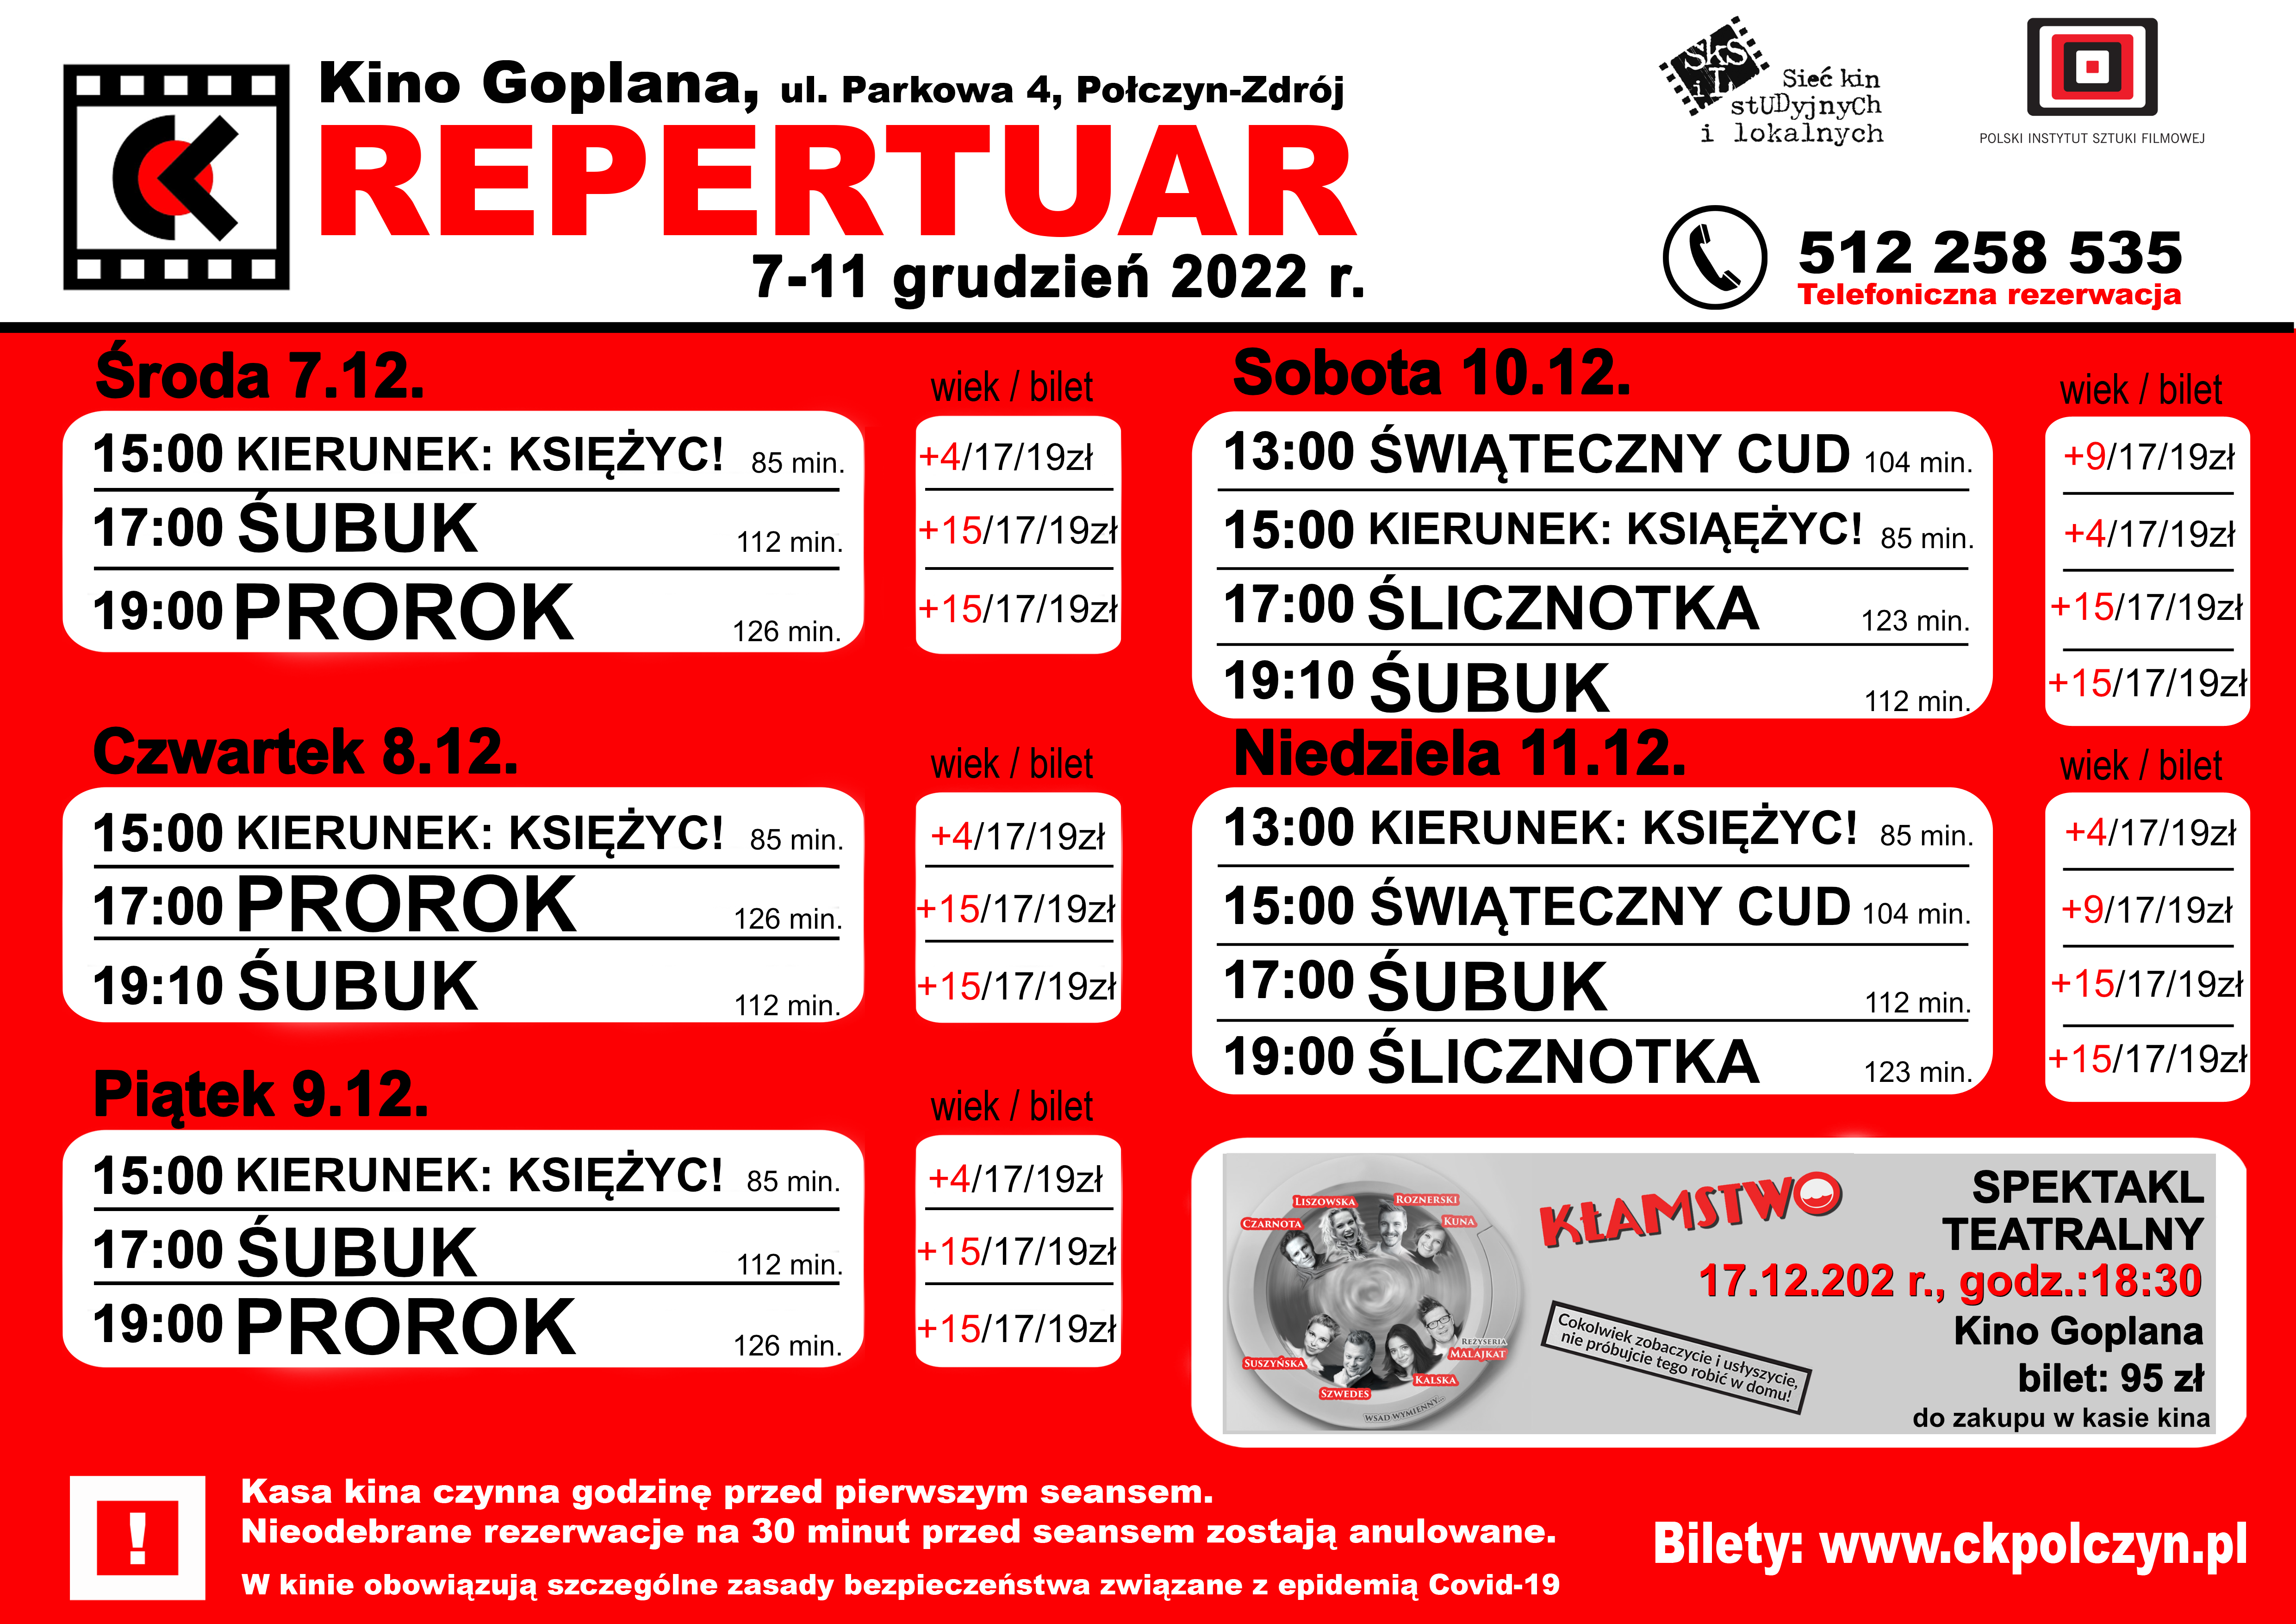 REPERTUAR-7-11grudzien-2022.png